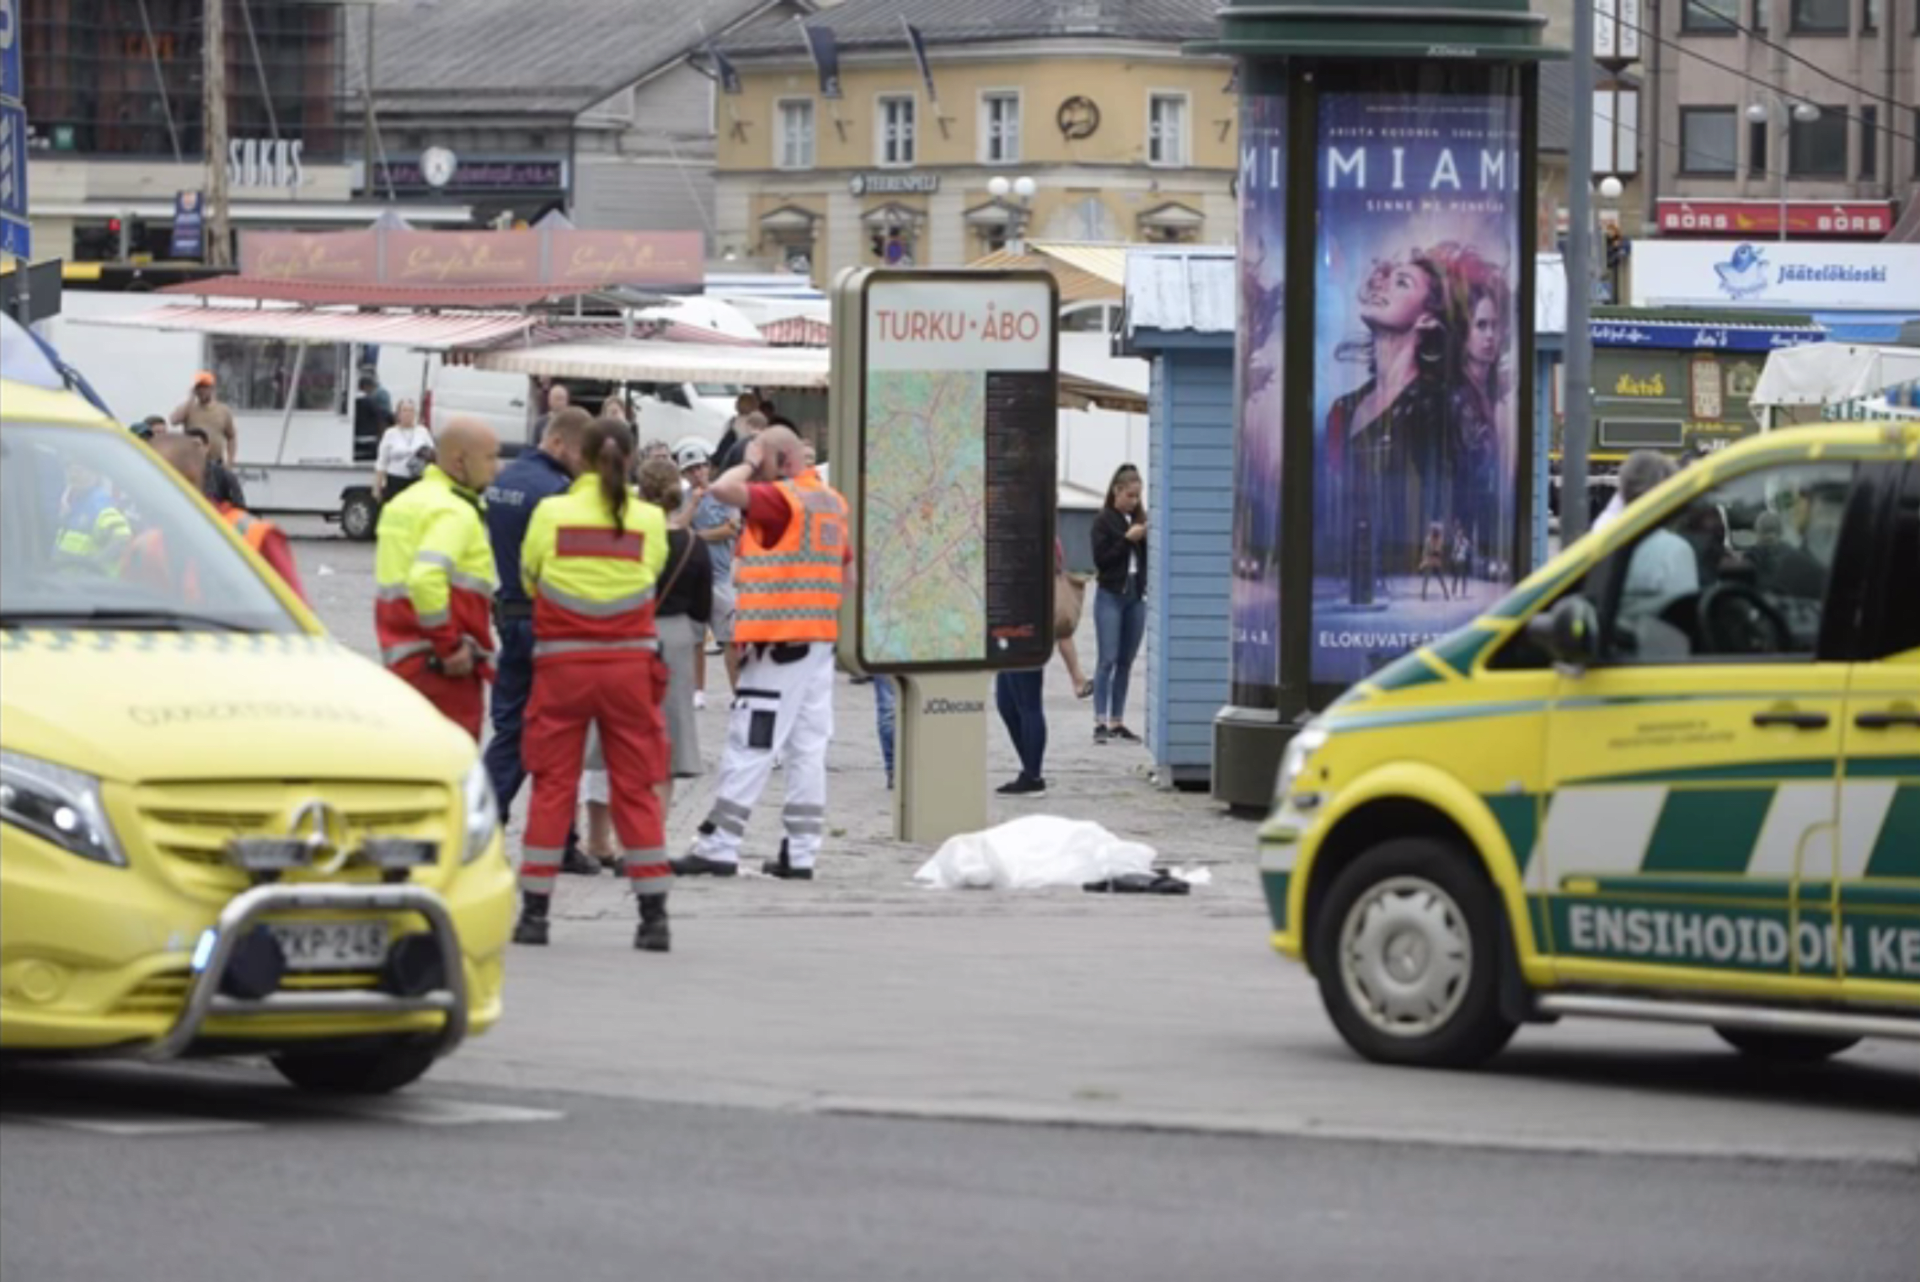 Útok ve finském městě Turku